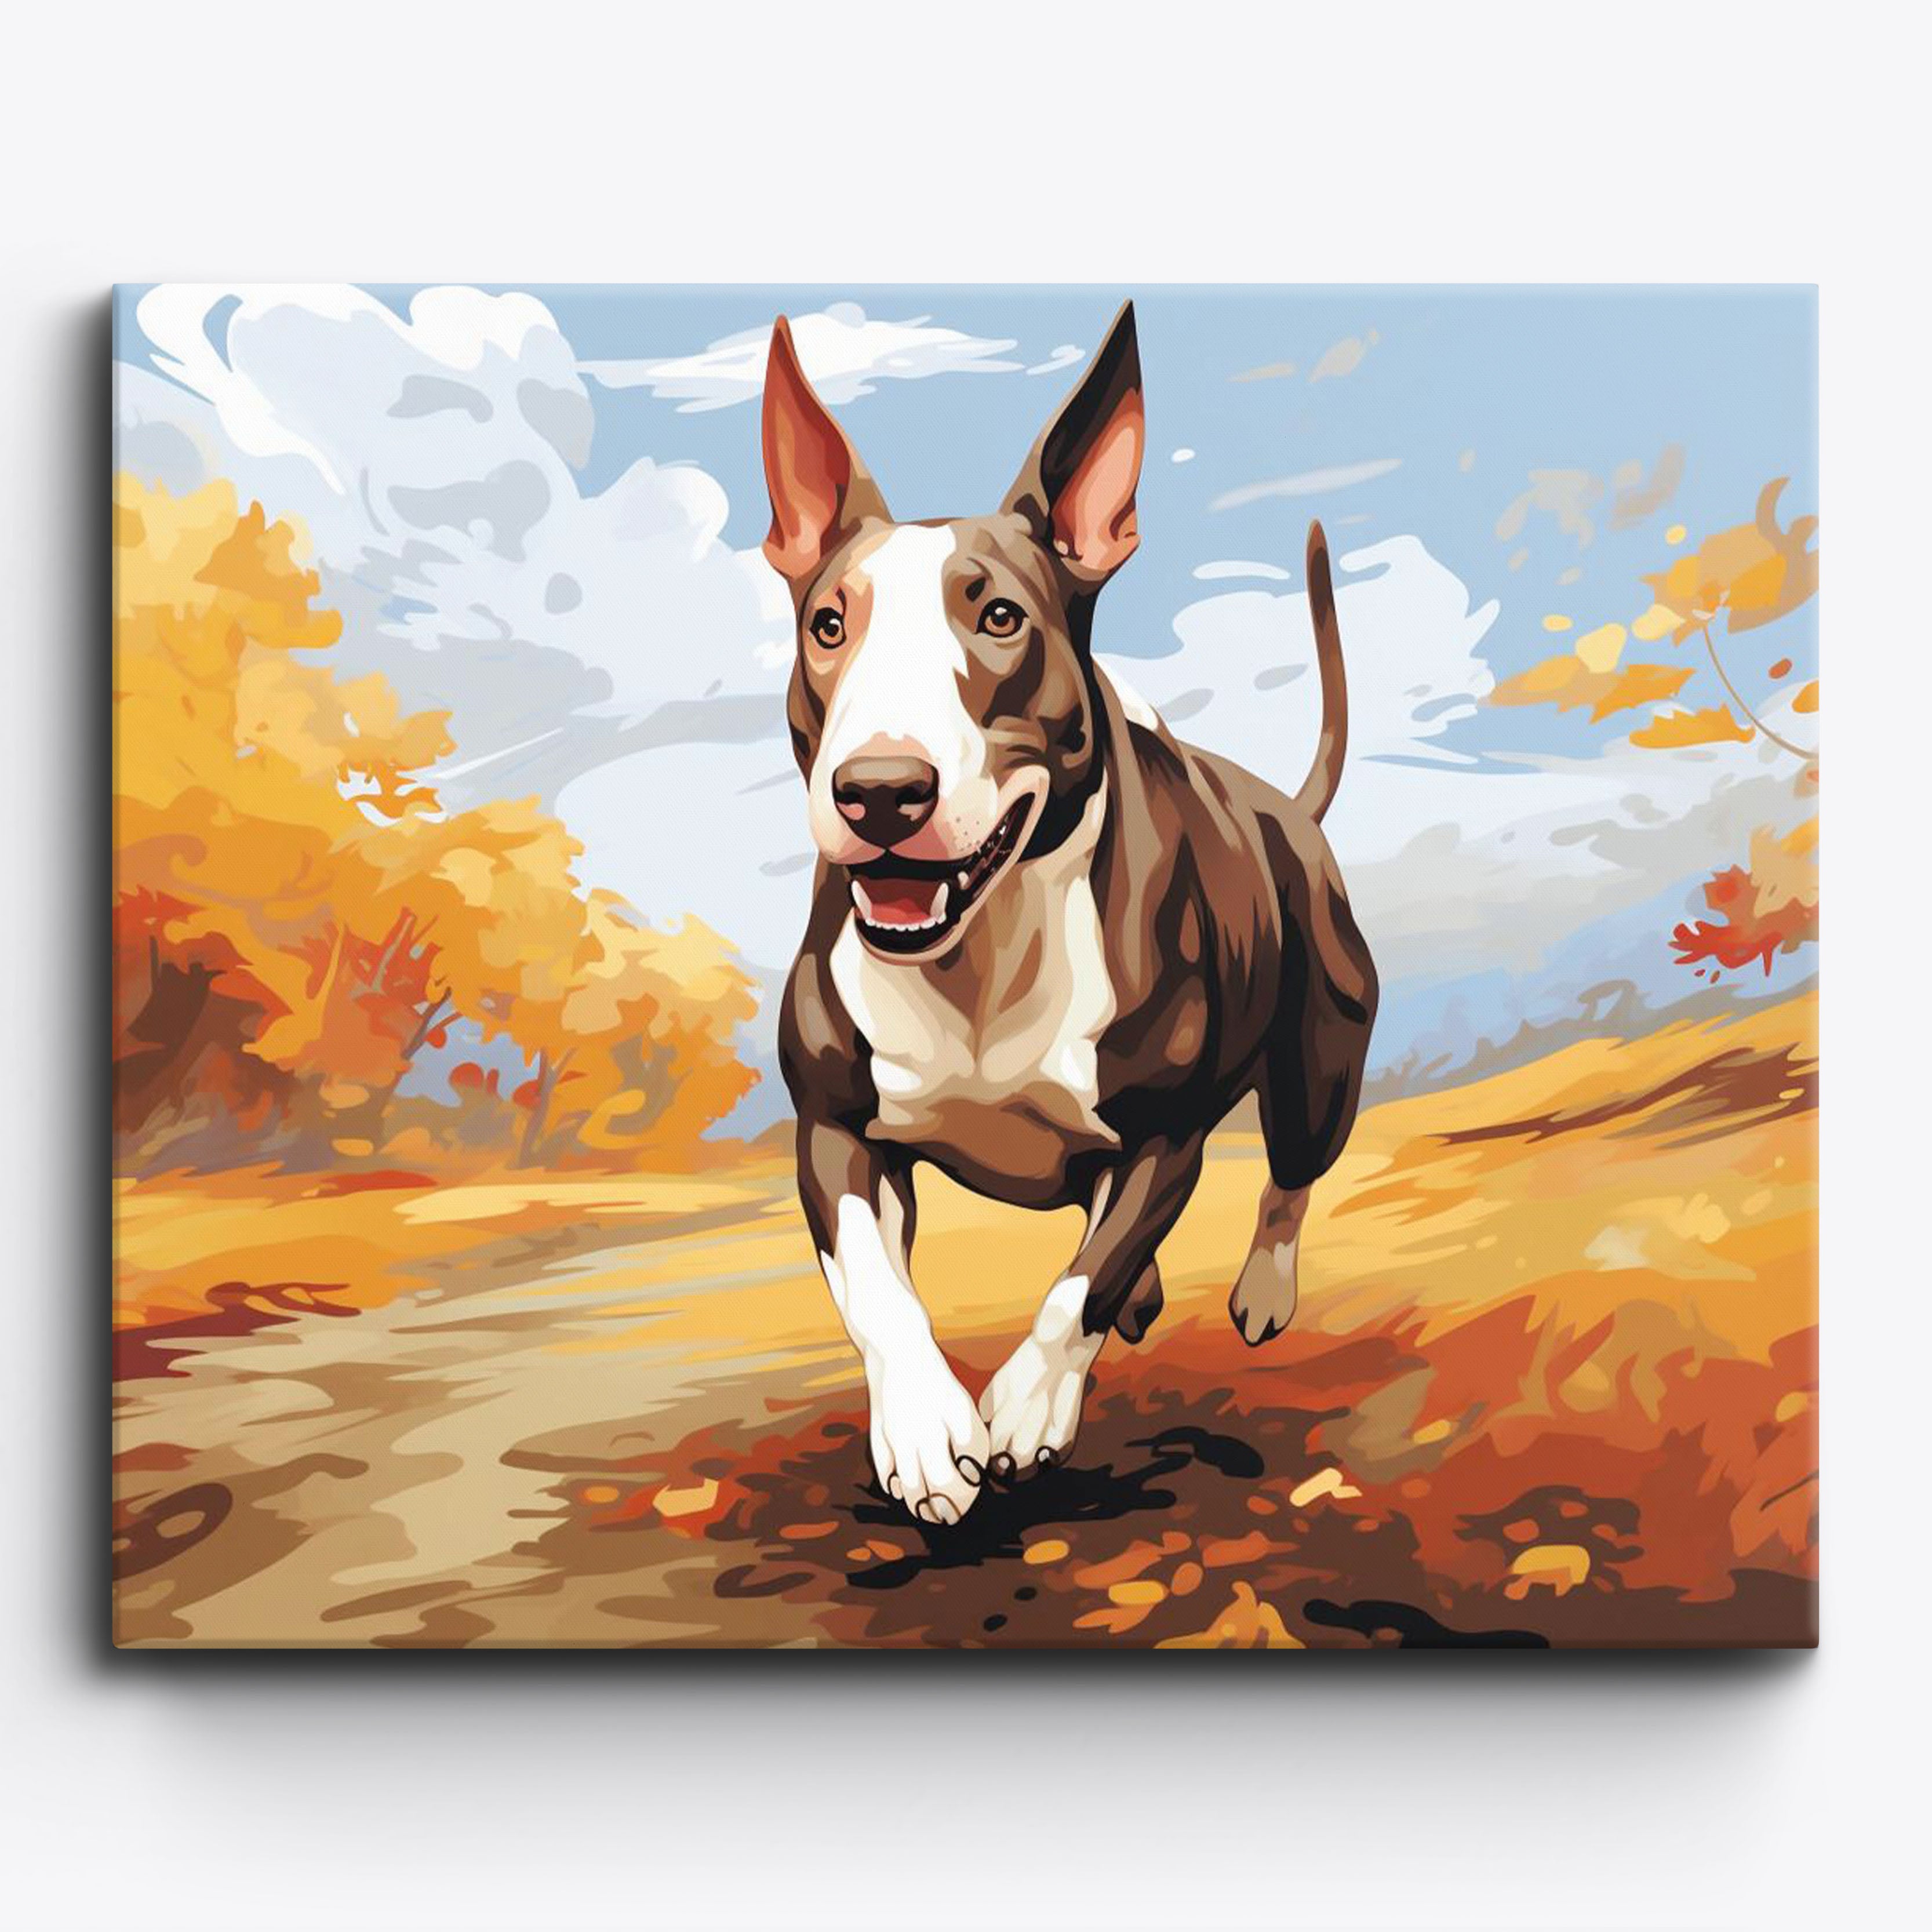 El juego pintado del Bull Terrier